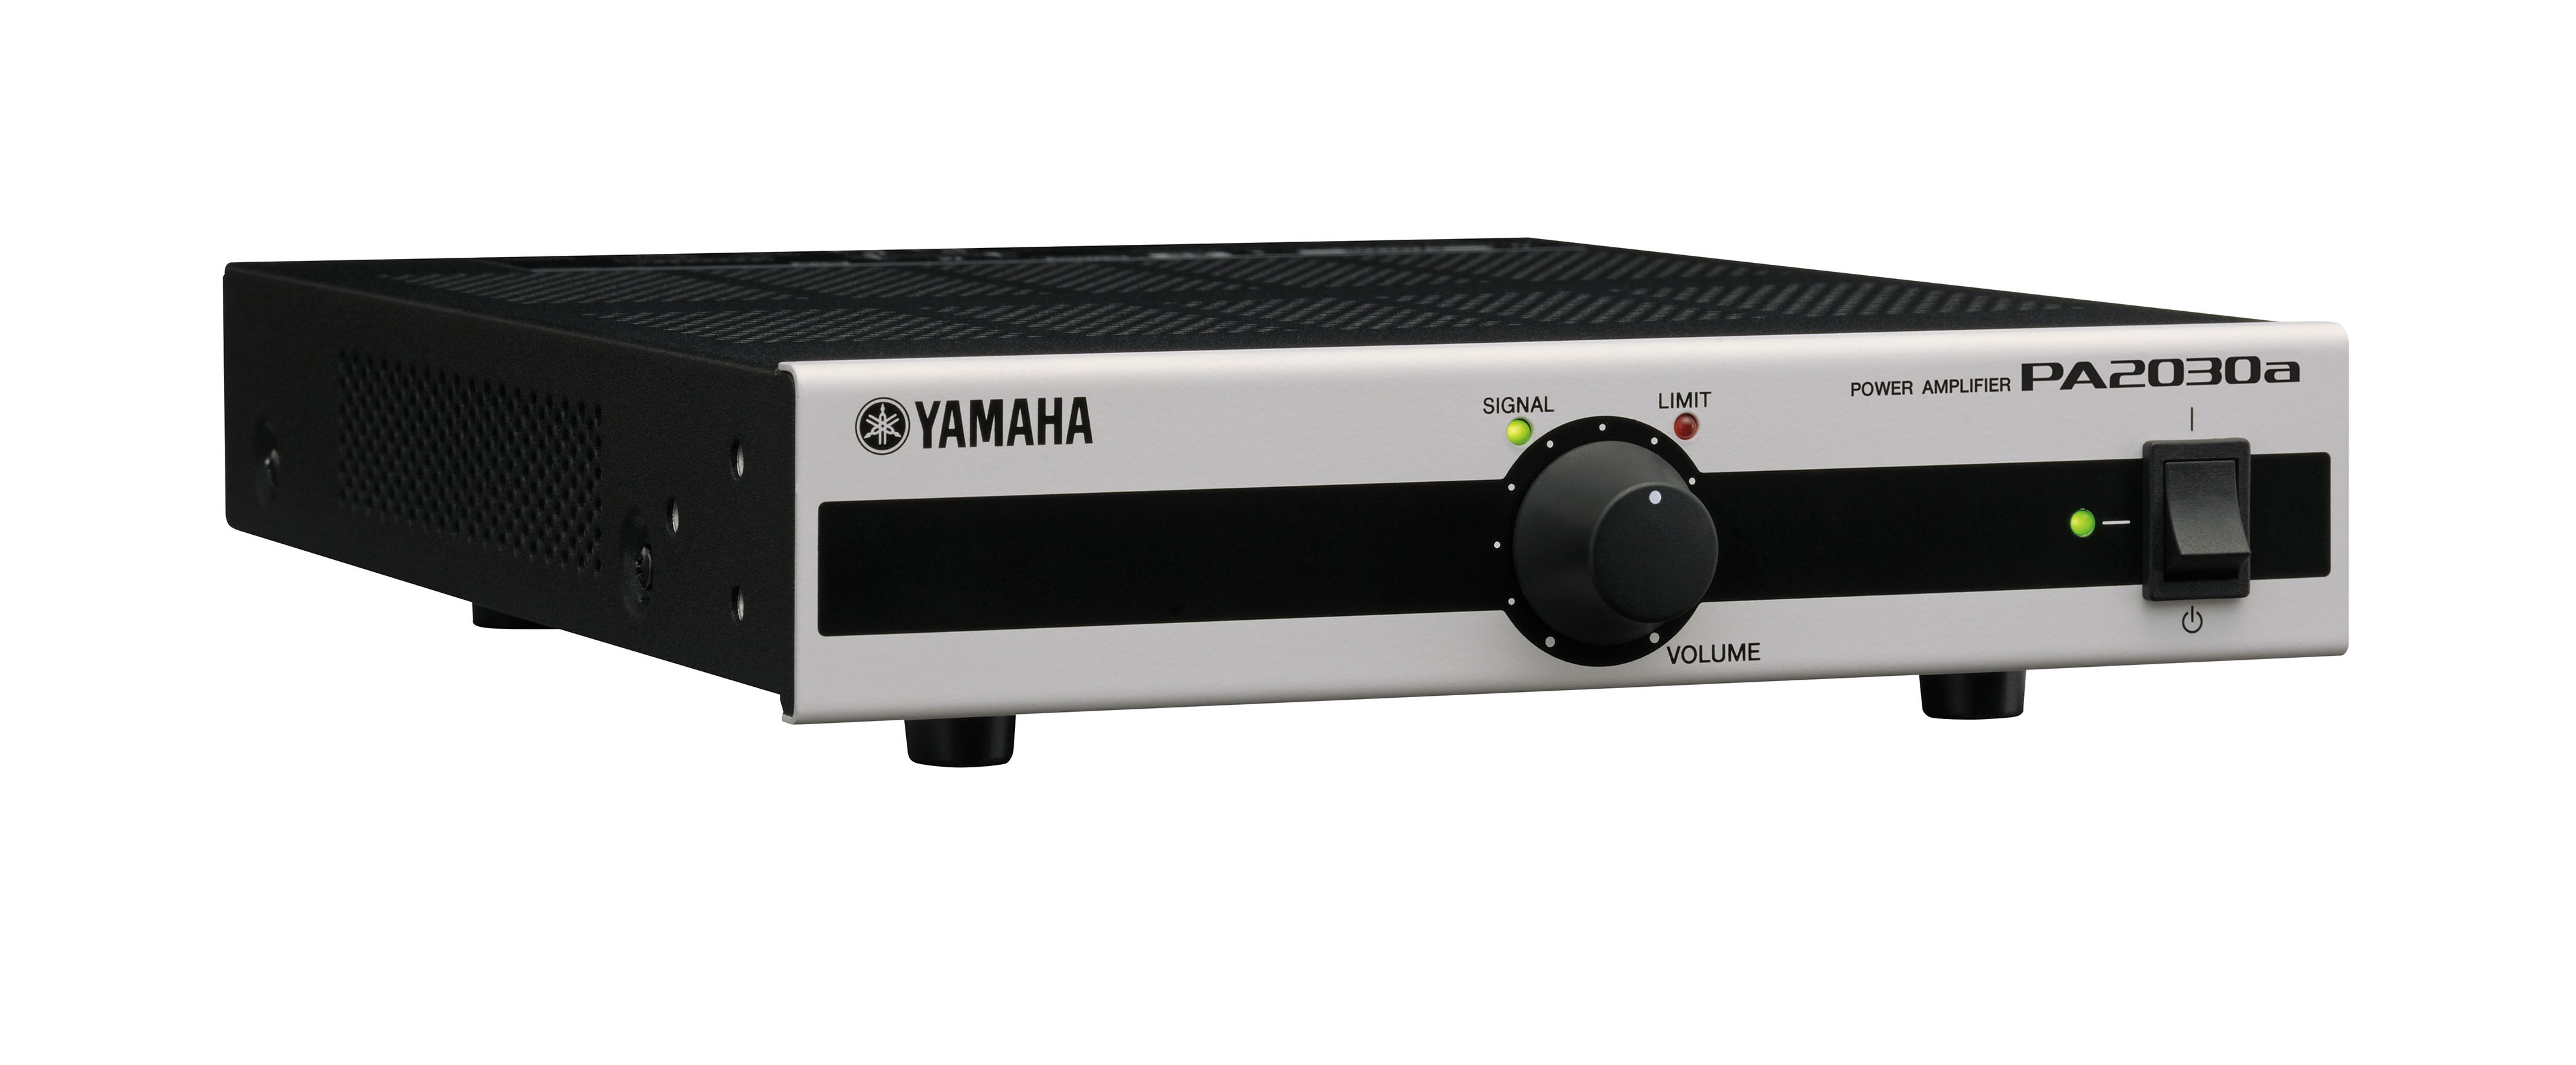 雅马哈(YAMAHA) PA2030a 多功能功放 商用安装功放 2.0声道专业功放 金属外观可用于ktv音响